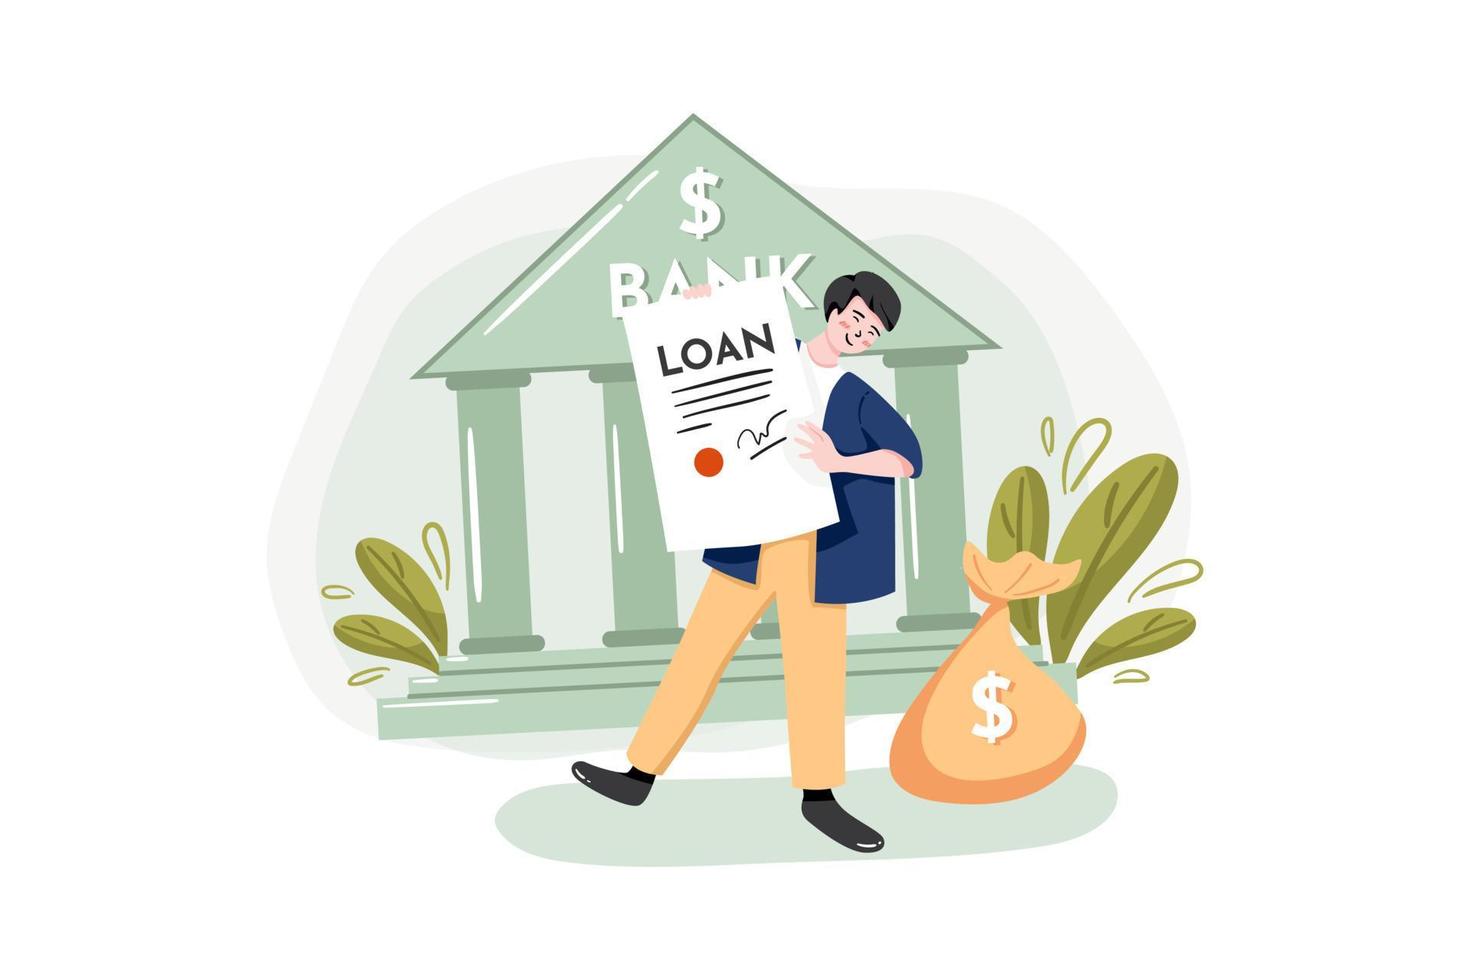 solicitar un préstamo en el concepto de ilustración del banco. ilustración plana aislada sobre fondo blanco. vector